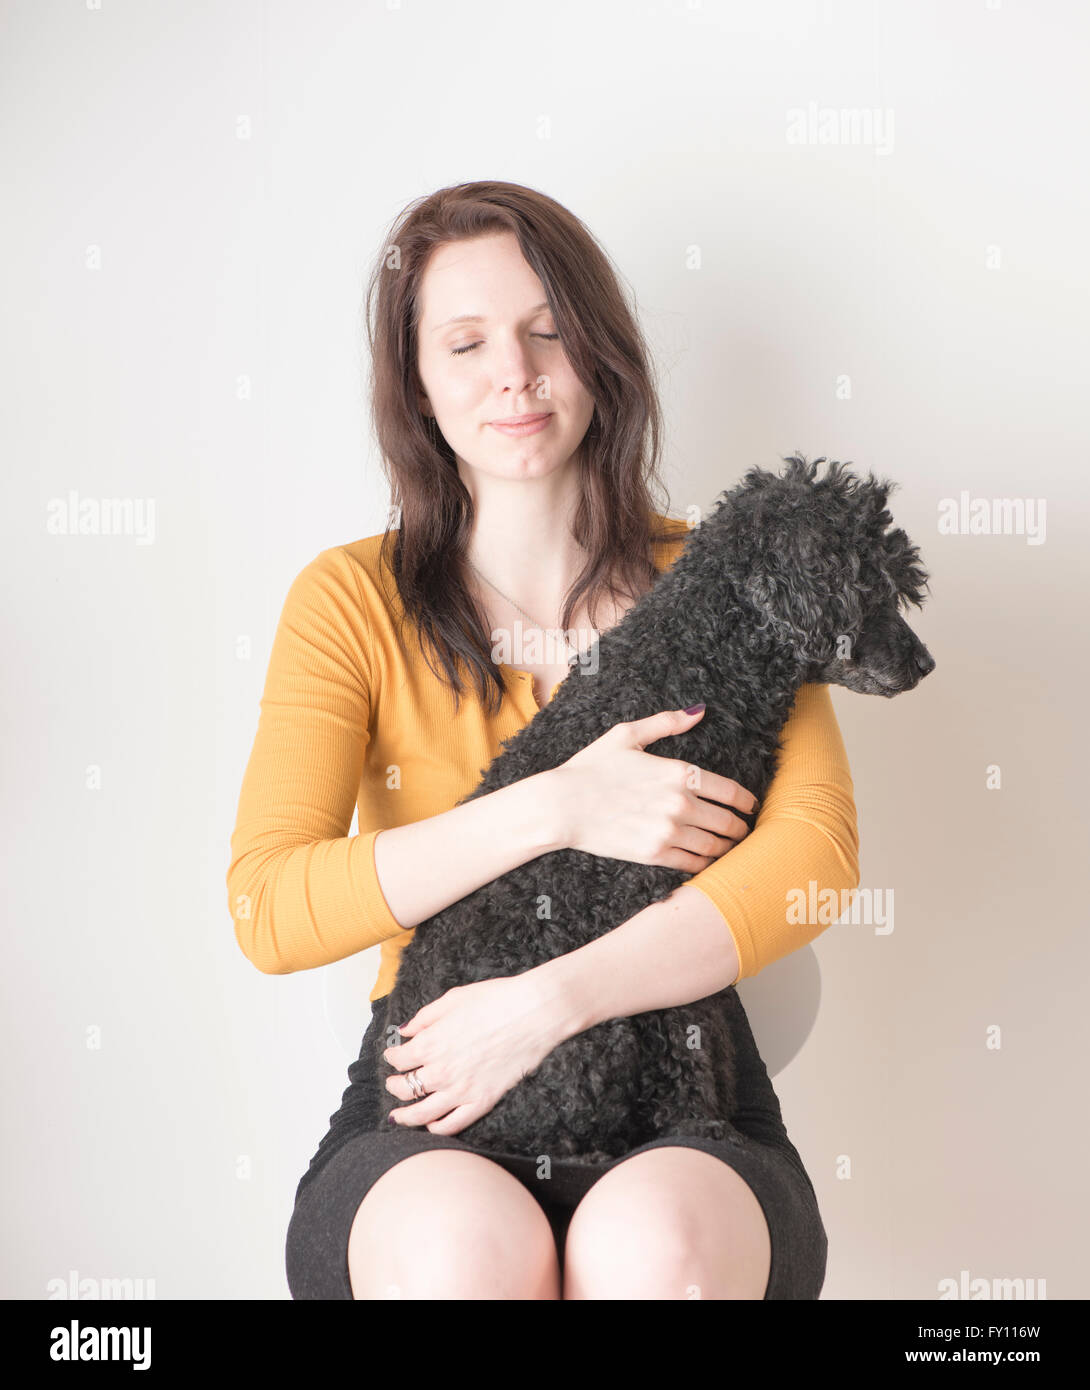 Frau mit Augen geschlossen halten schwarzen Pudel im Arm. Lifestyle-Bild zeigt Zuneigung und die Bindung zwischen Hund und Mensch. Stockfoto